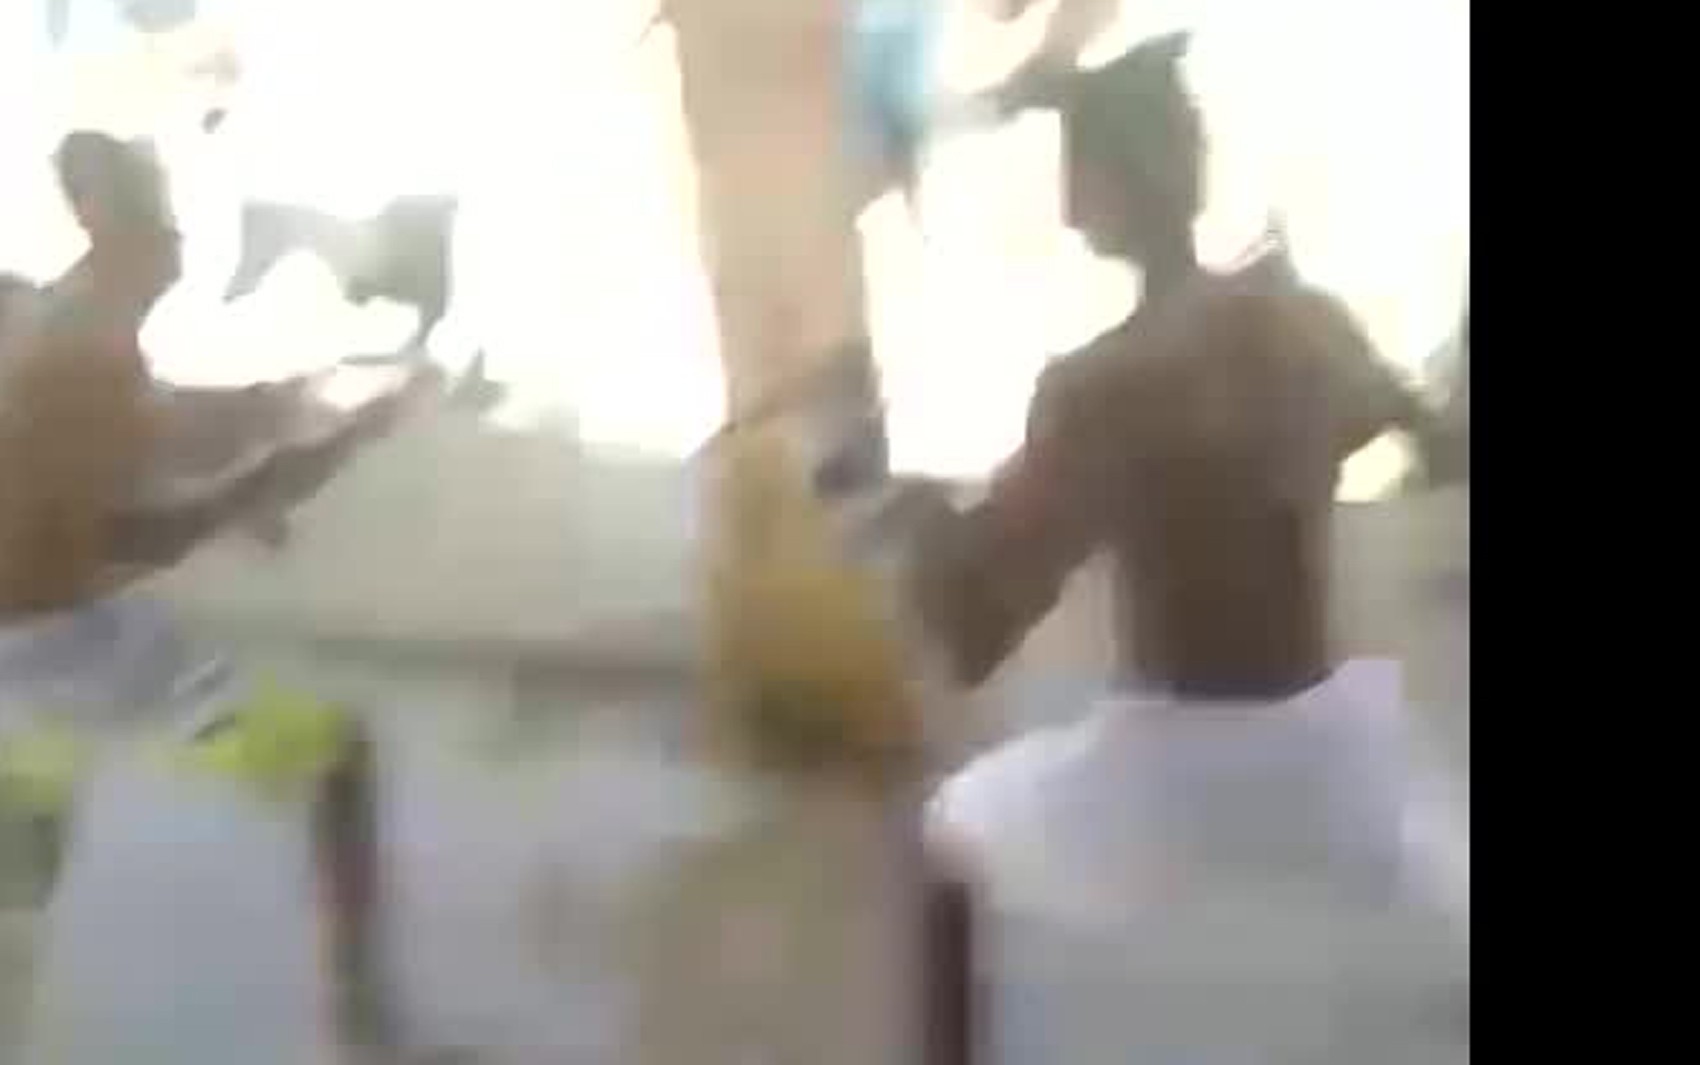 Vídeo mostra presos brigando com facões em penitenciária de segurança máxima e detentos gritam: 'só os dois'